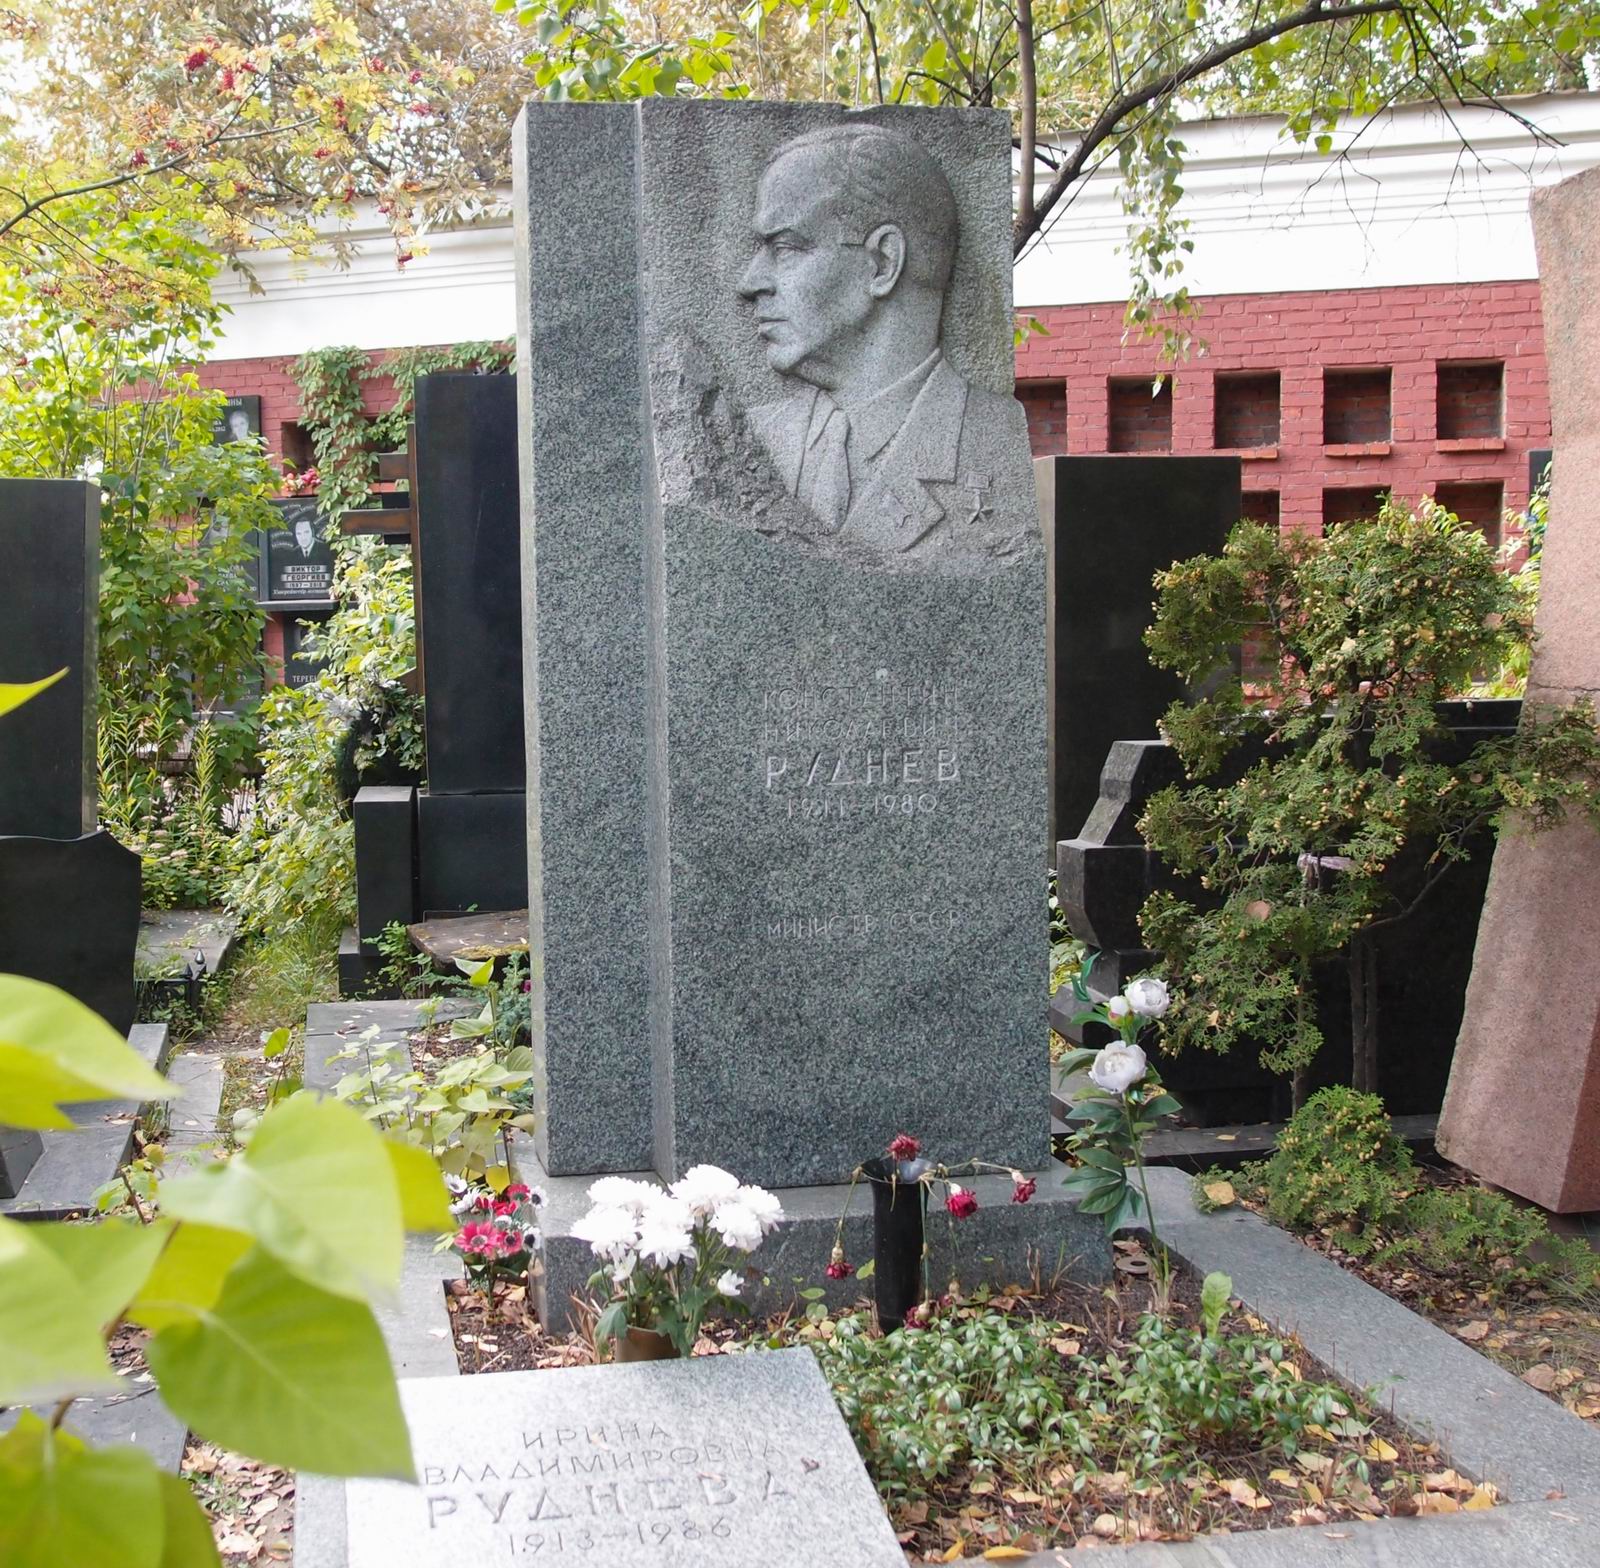 Памятник на могиле Руднева К.Н. (1911-1980), ск. Н.Саркисов, арх. И.Былинкин, на Новодевичьем кладбище (9-6-6). Нажмите левую кнопку мыши чтобы увидеть фрагмент памятника.